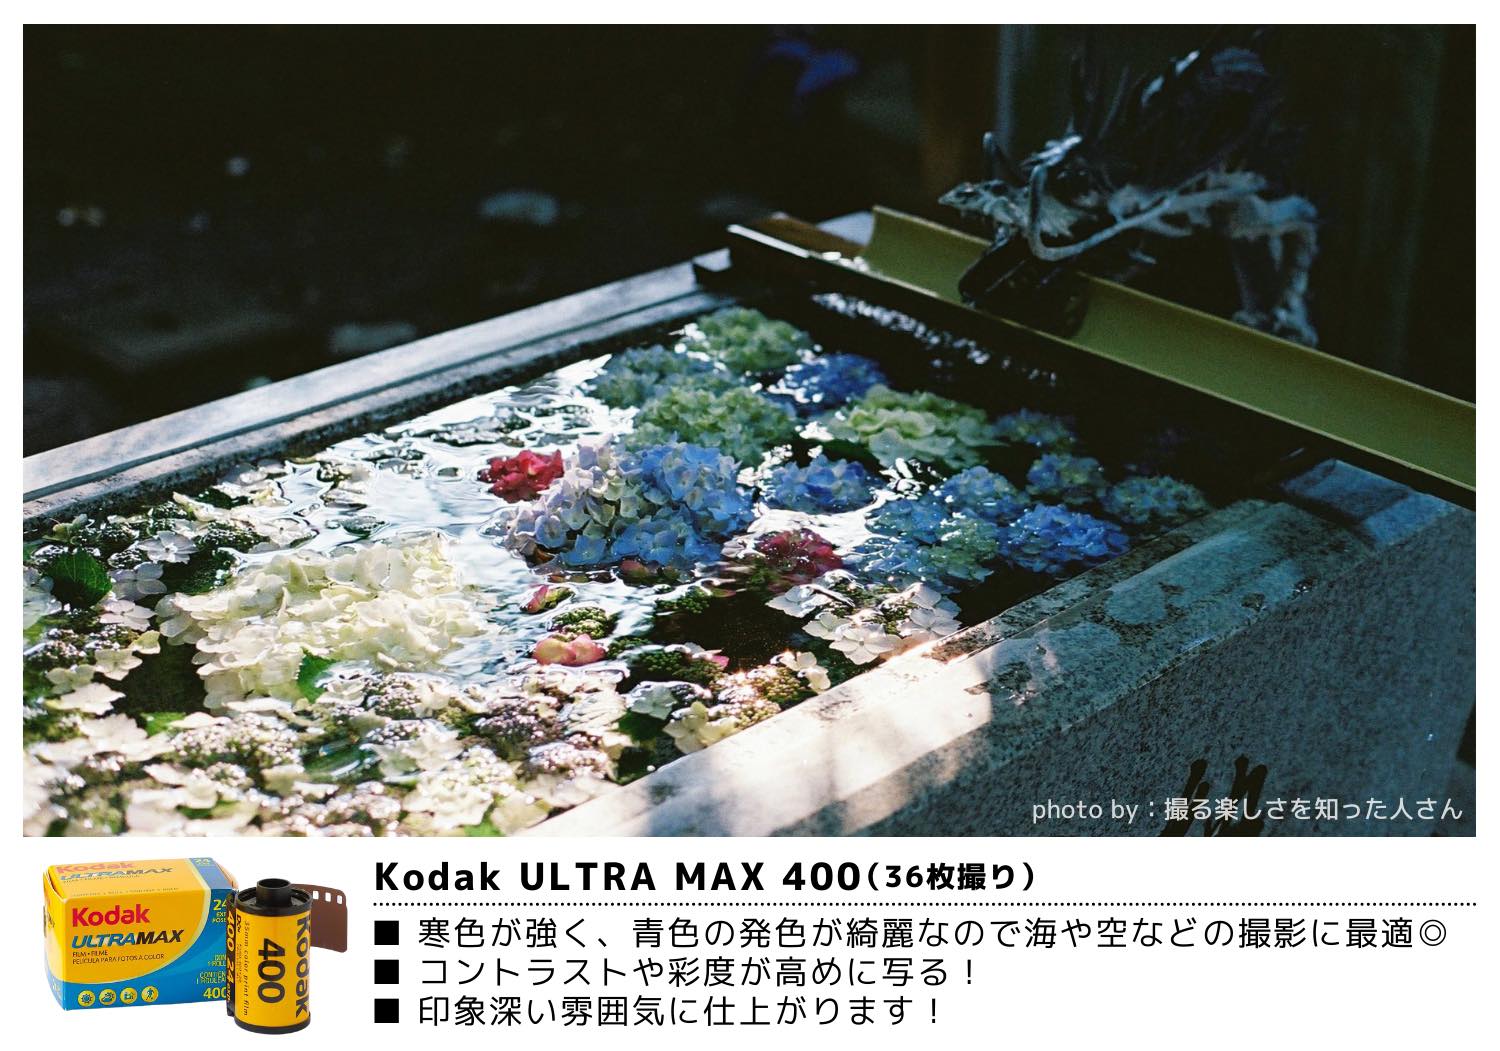 UltraMAX400 135 36枚撮り/カラーネガフィルム – サトカメオンライン